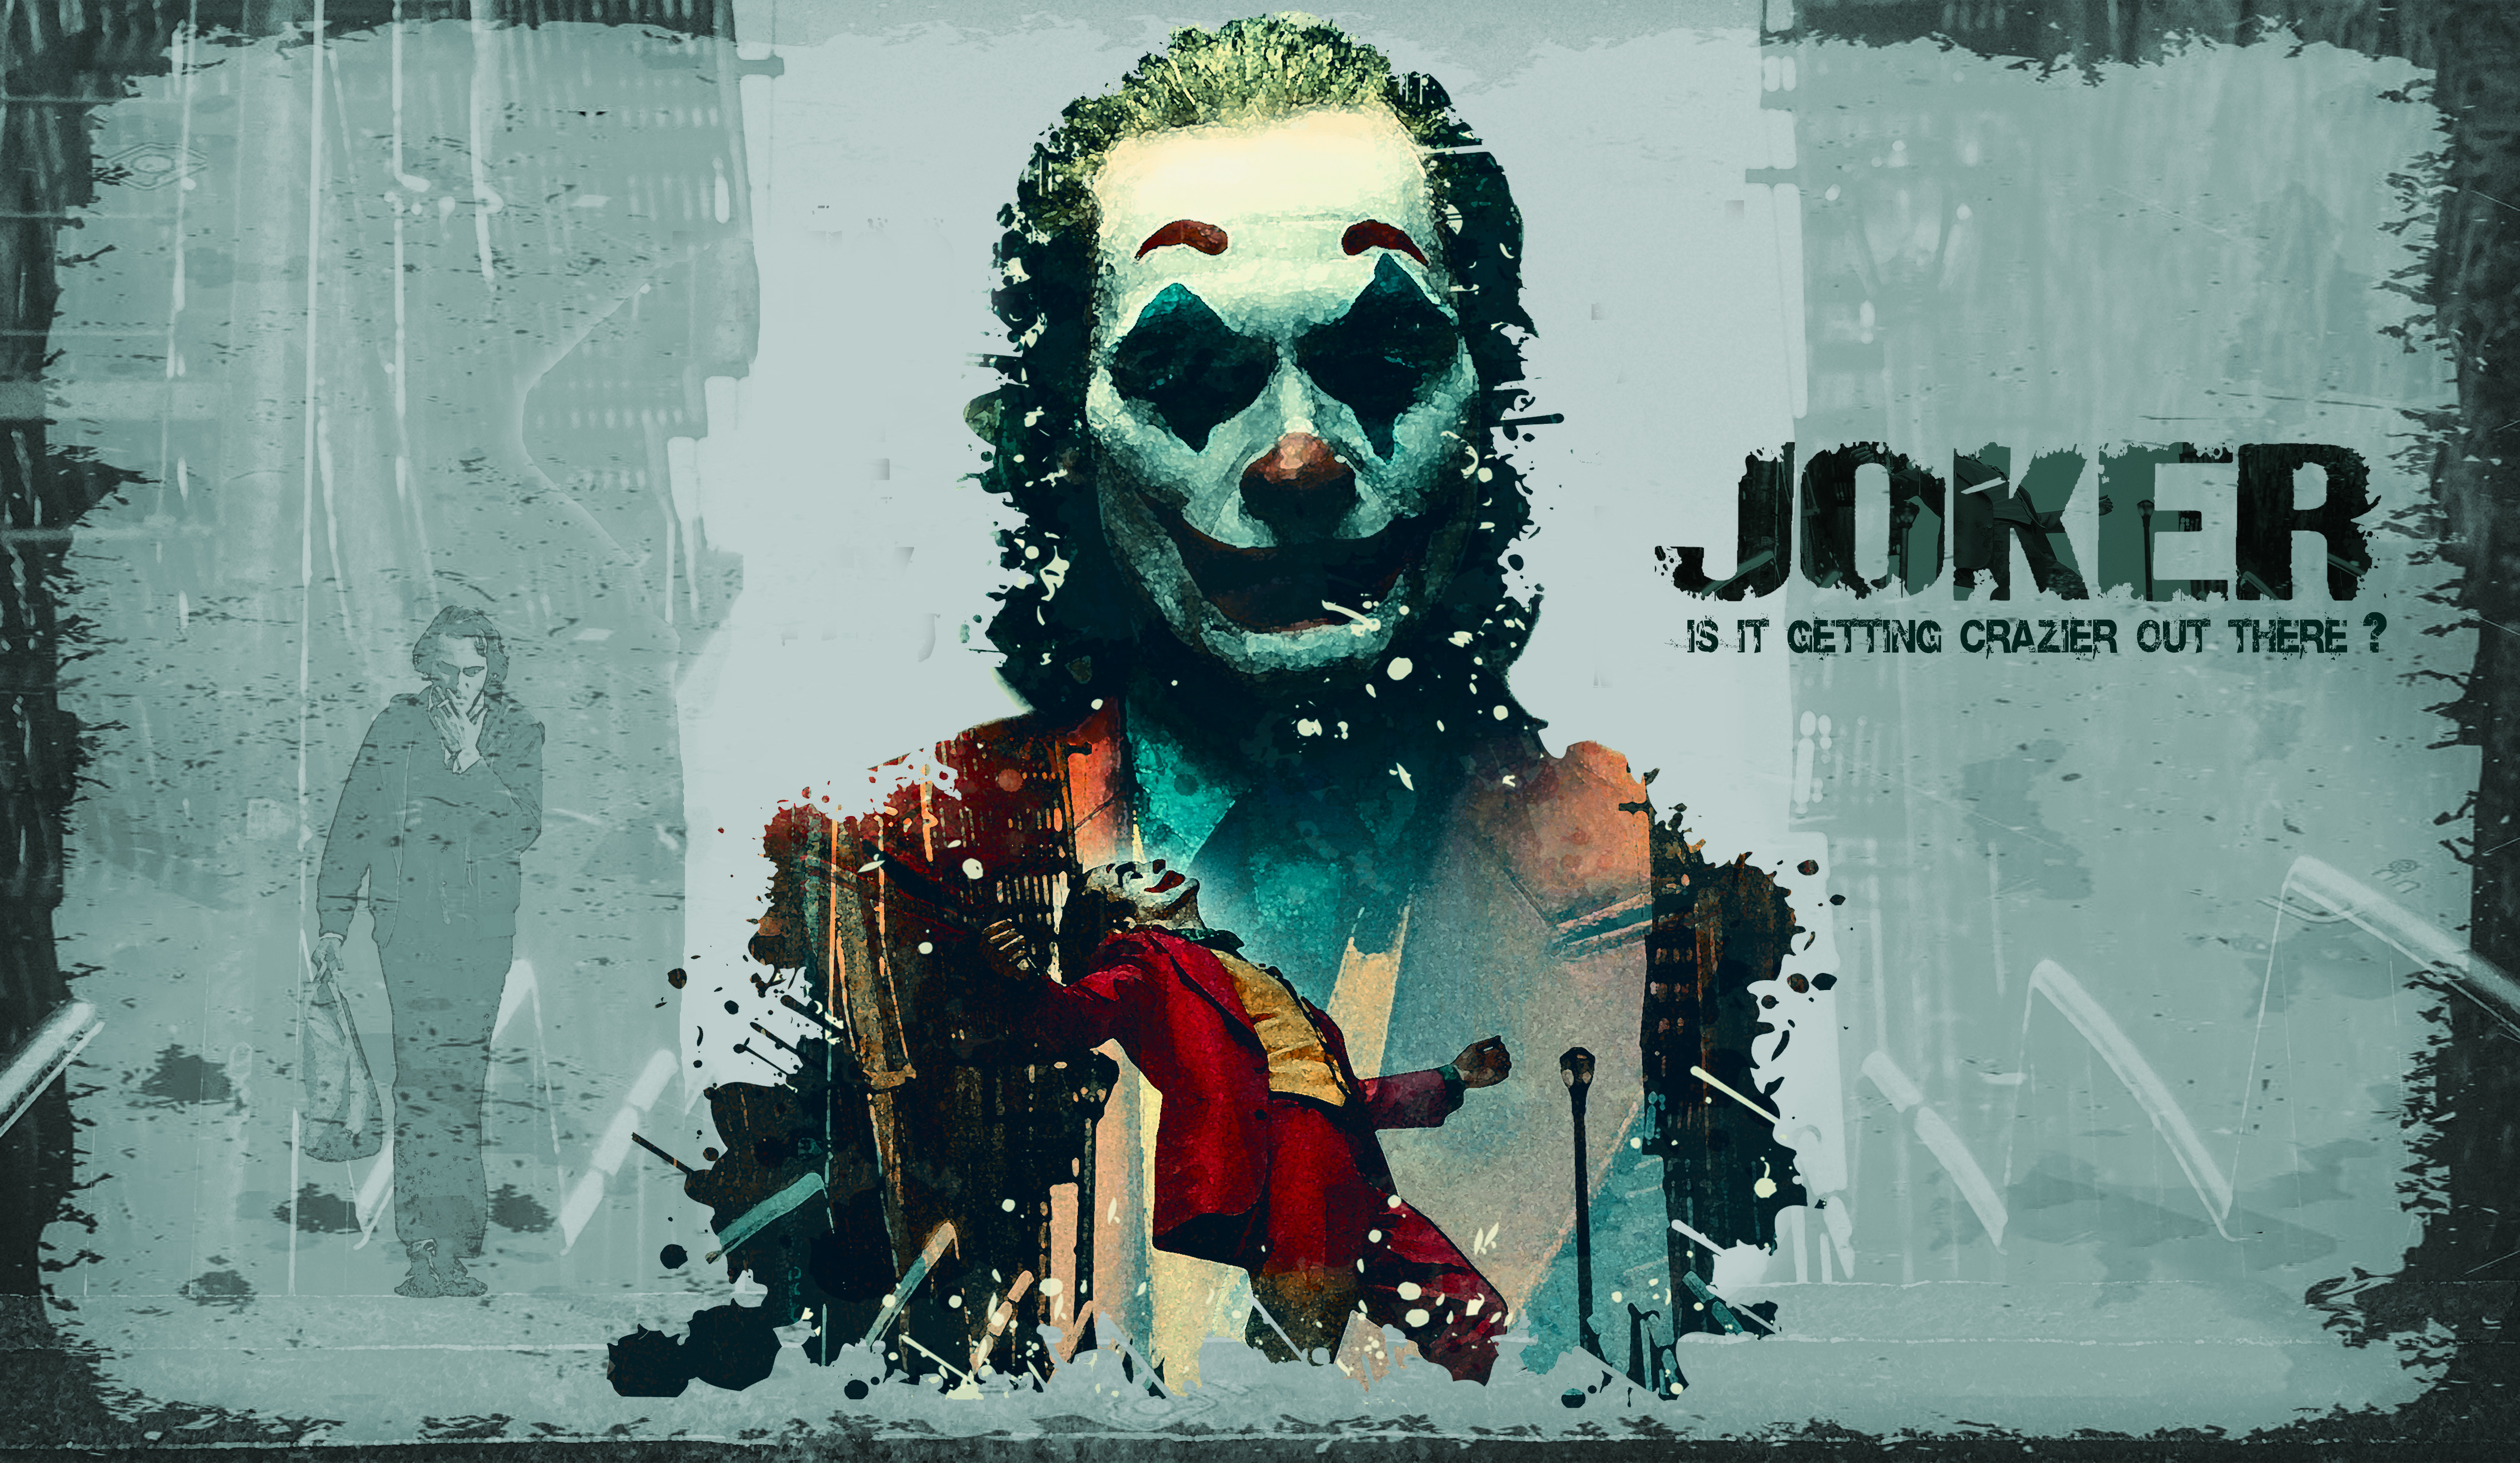 Jared Leto Joker FanArt 4K HD Jared Leto Wallpapers  HD Wallpapers  ID  56163